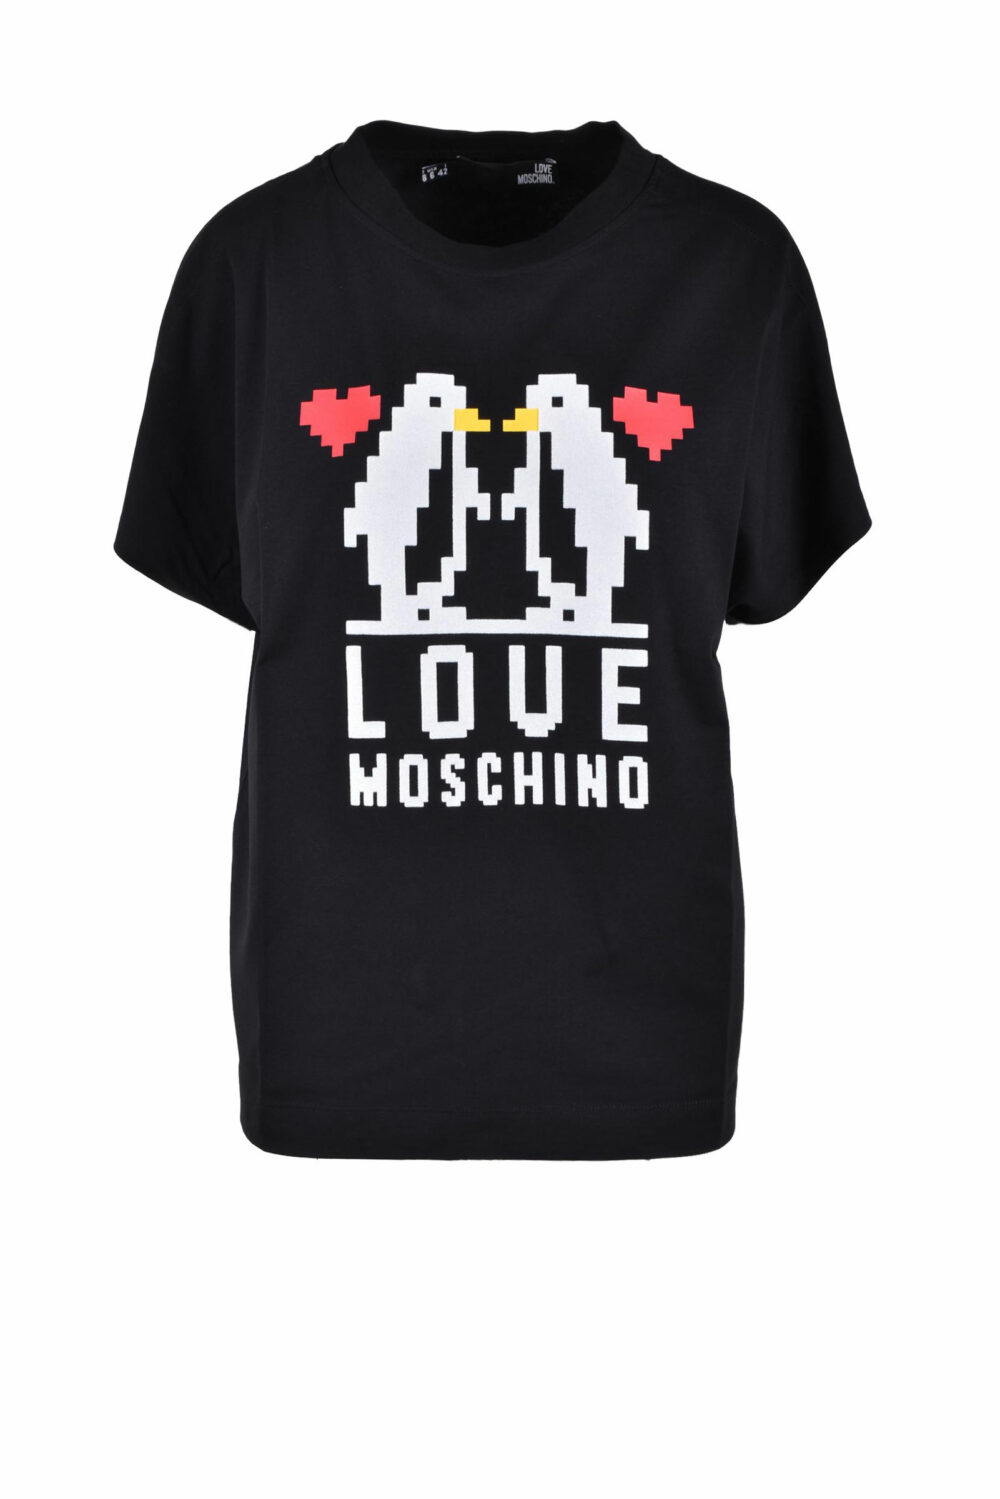 T-shirt Love Moschino Nero - Foto 1